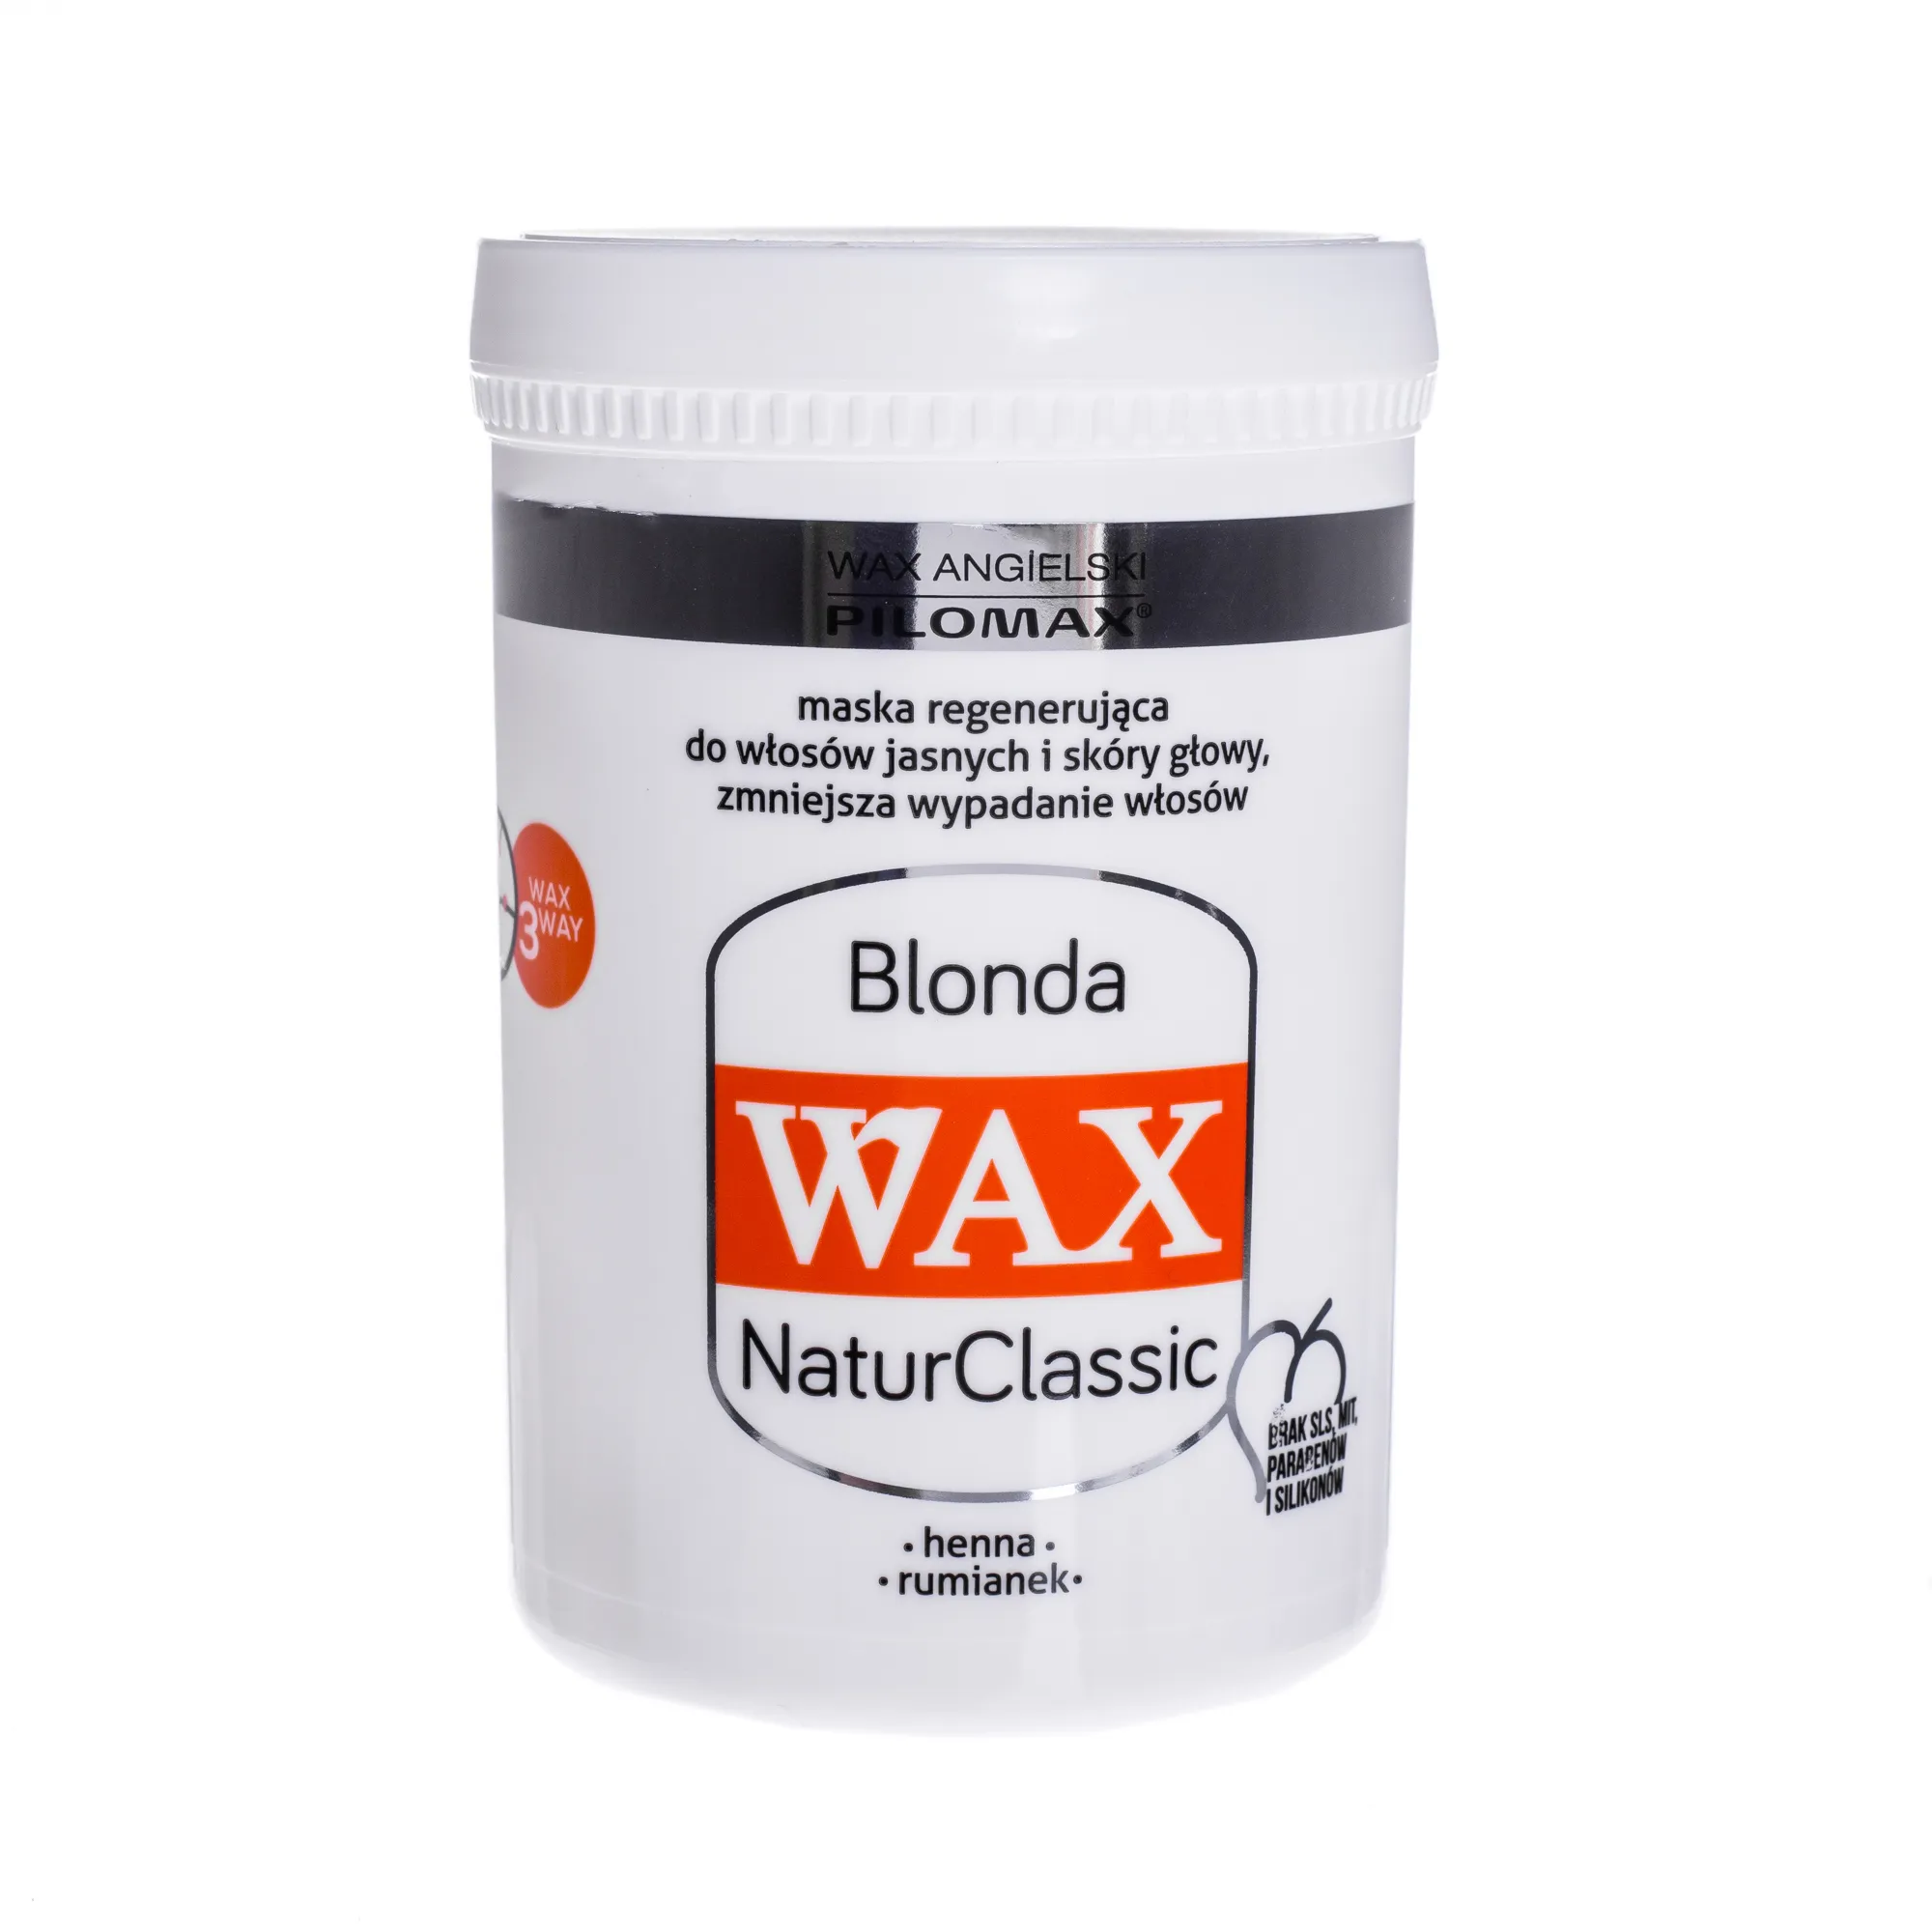 Wax ang Pilomax NaturClassic Wax Blonda, maska do włosów zniszczonych i jasnych, 480 ml 